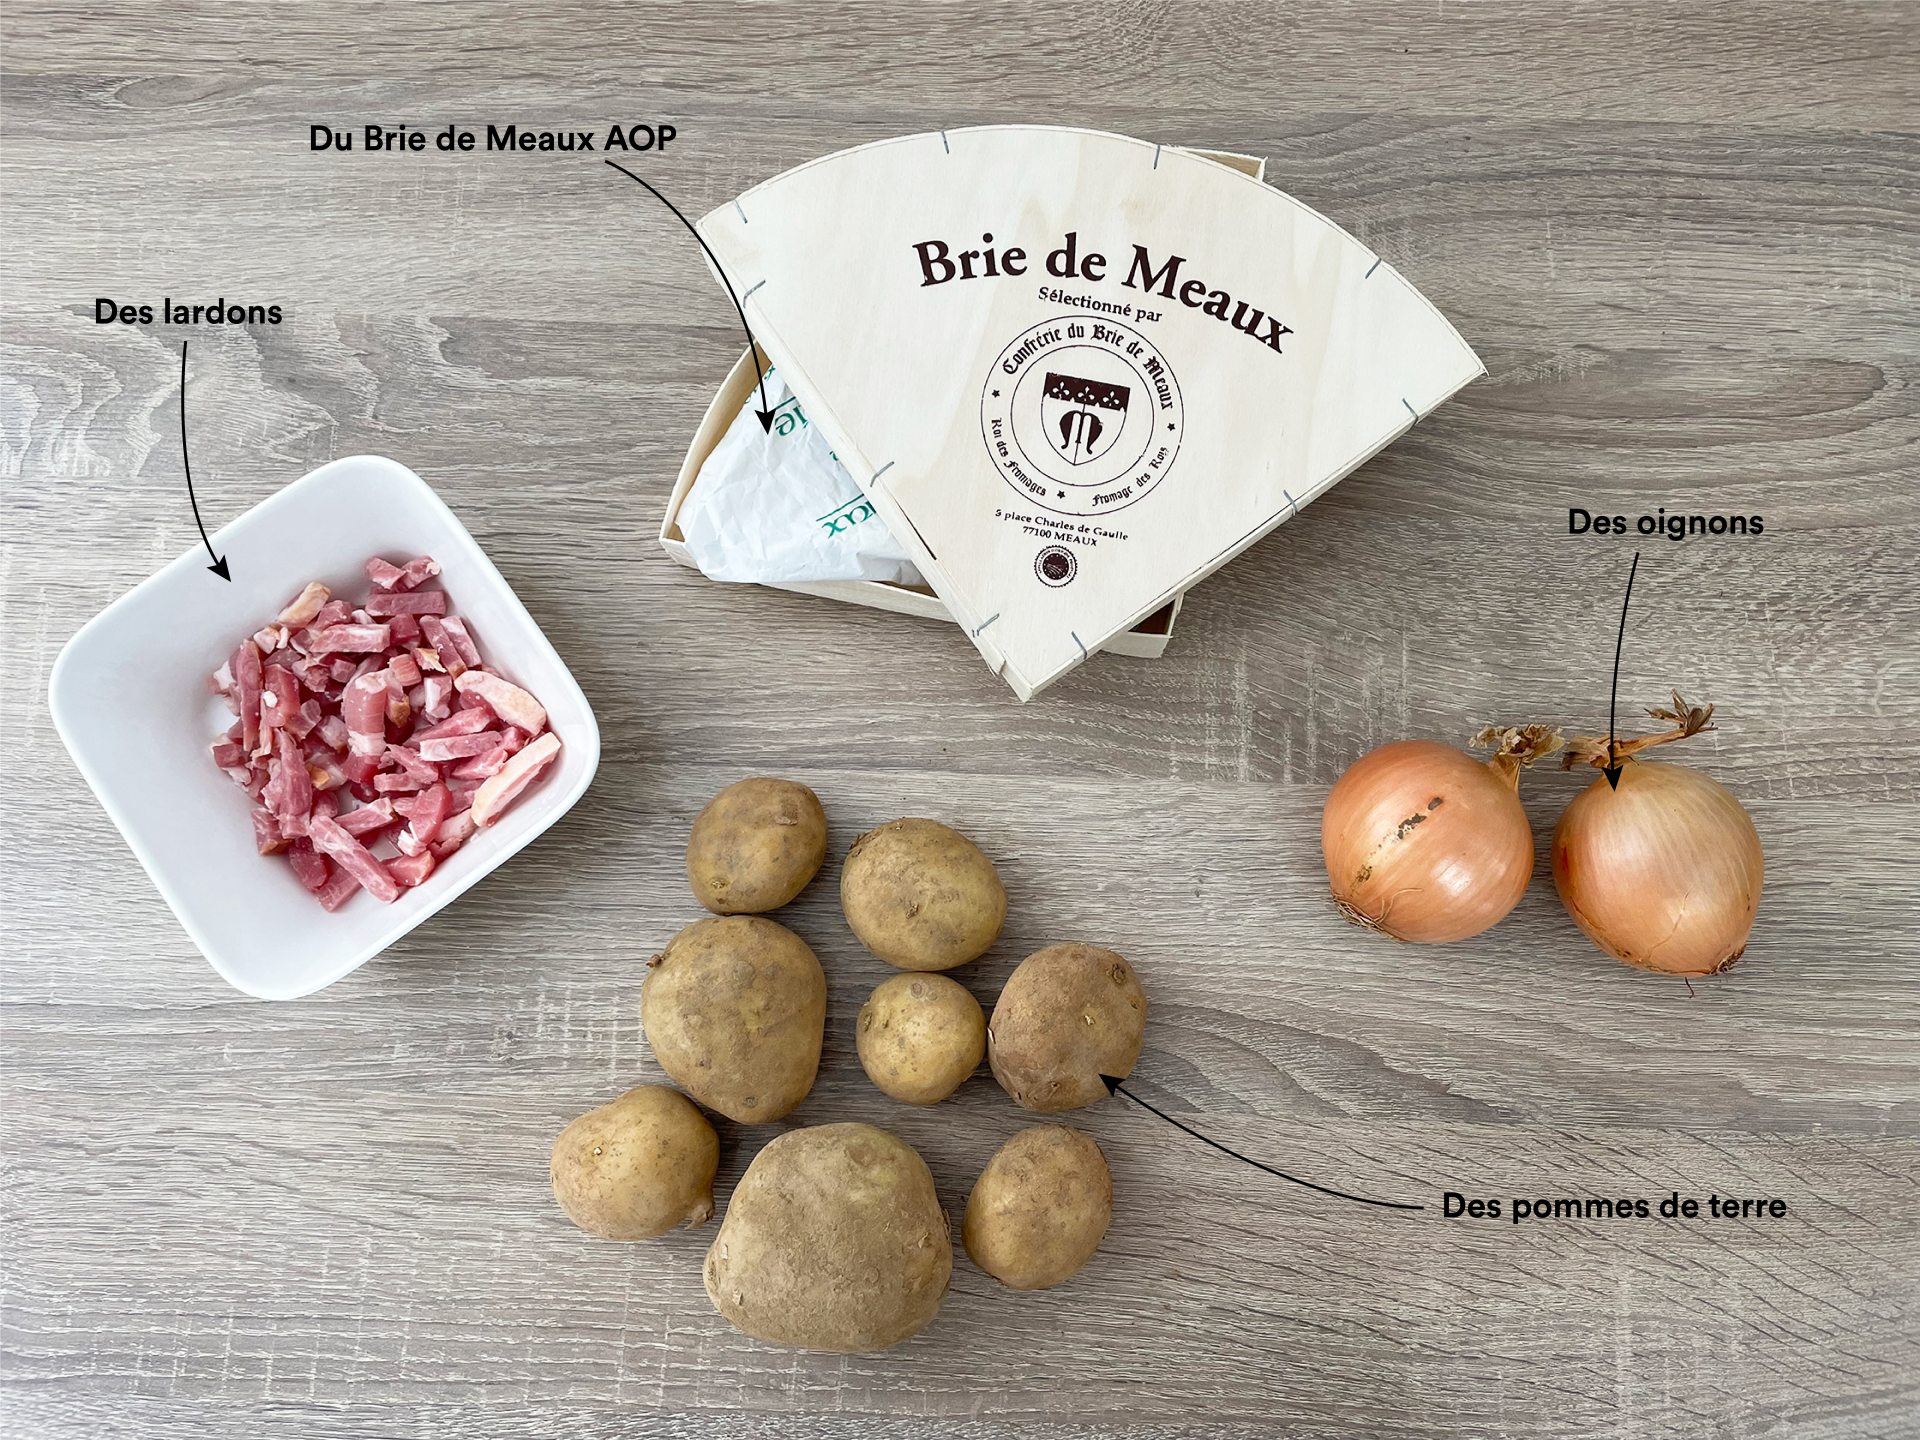 Ingrédients de la Brieflette : Brie de Meaux AOP, lardons, pommes de terre, oignon(s)